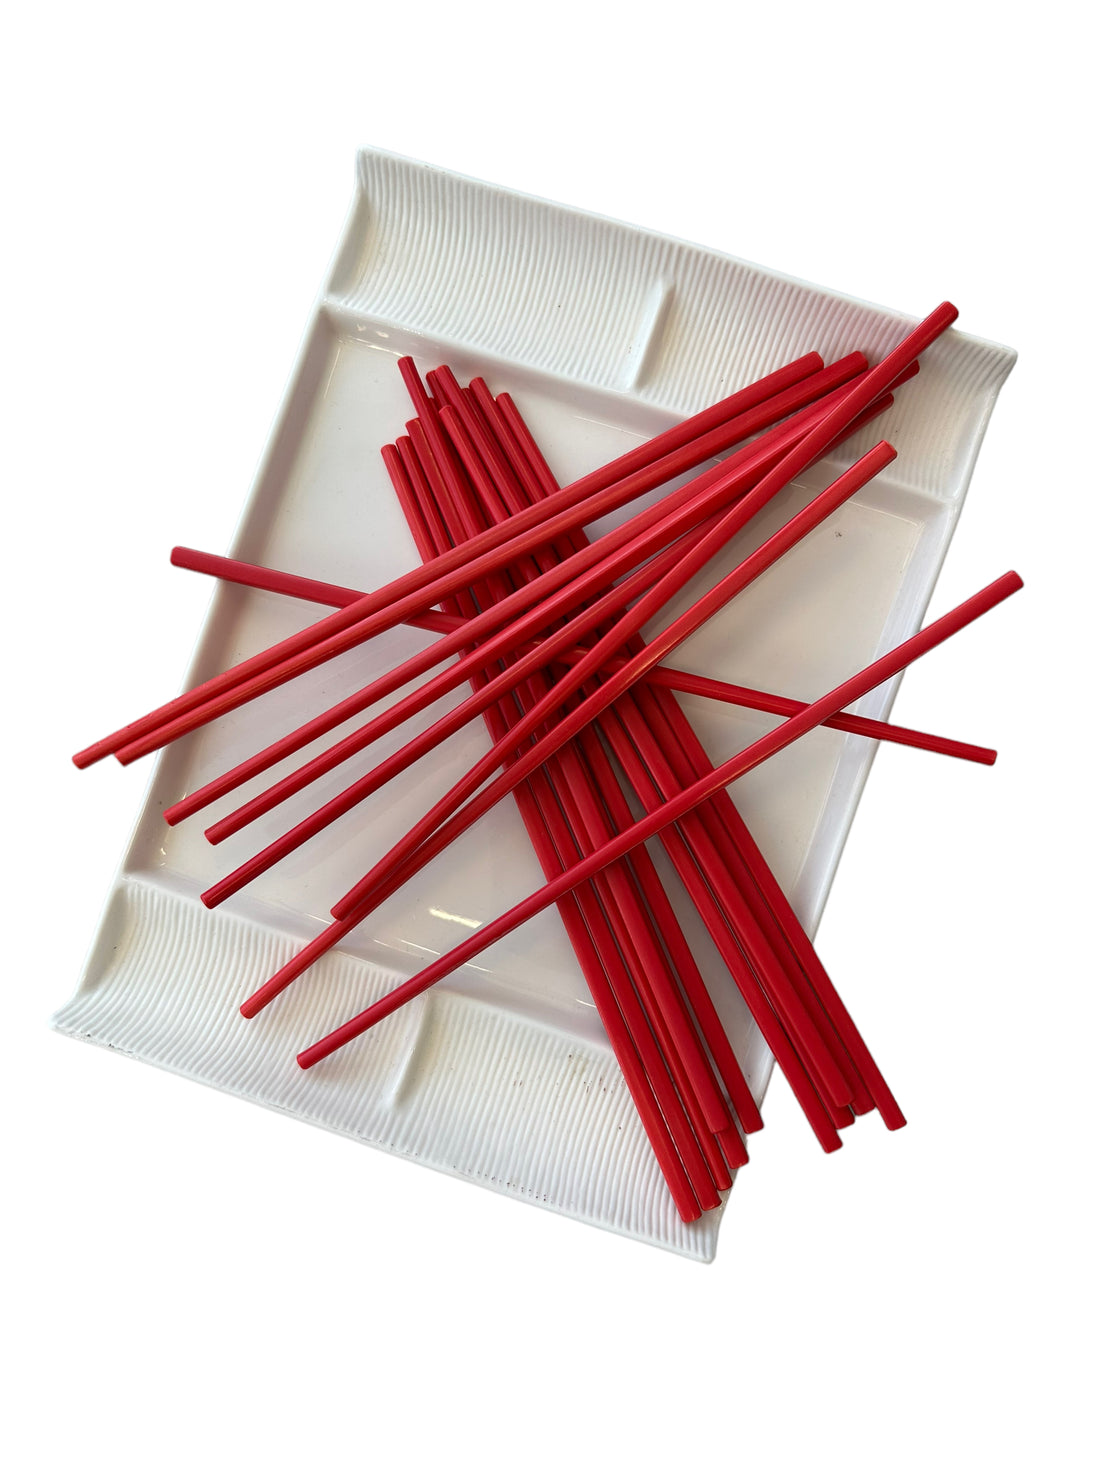 Asian Platter with Chopsticks